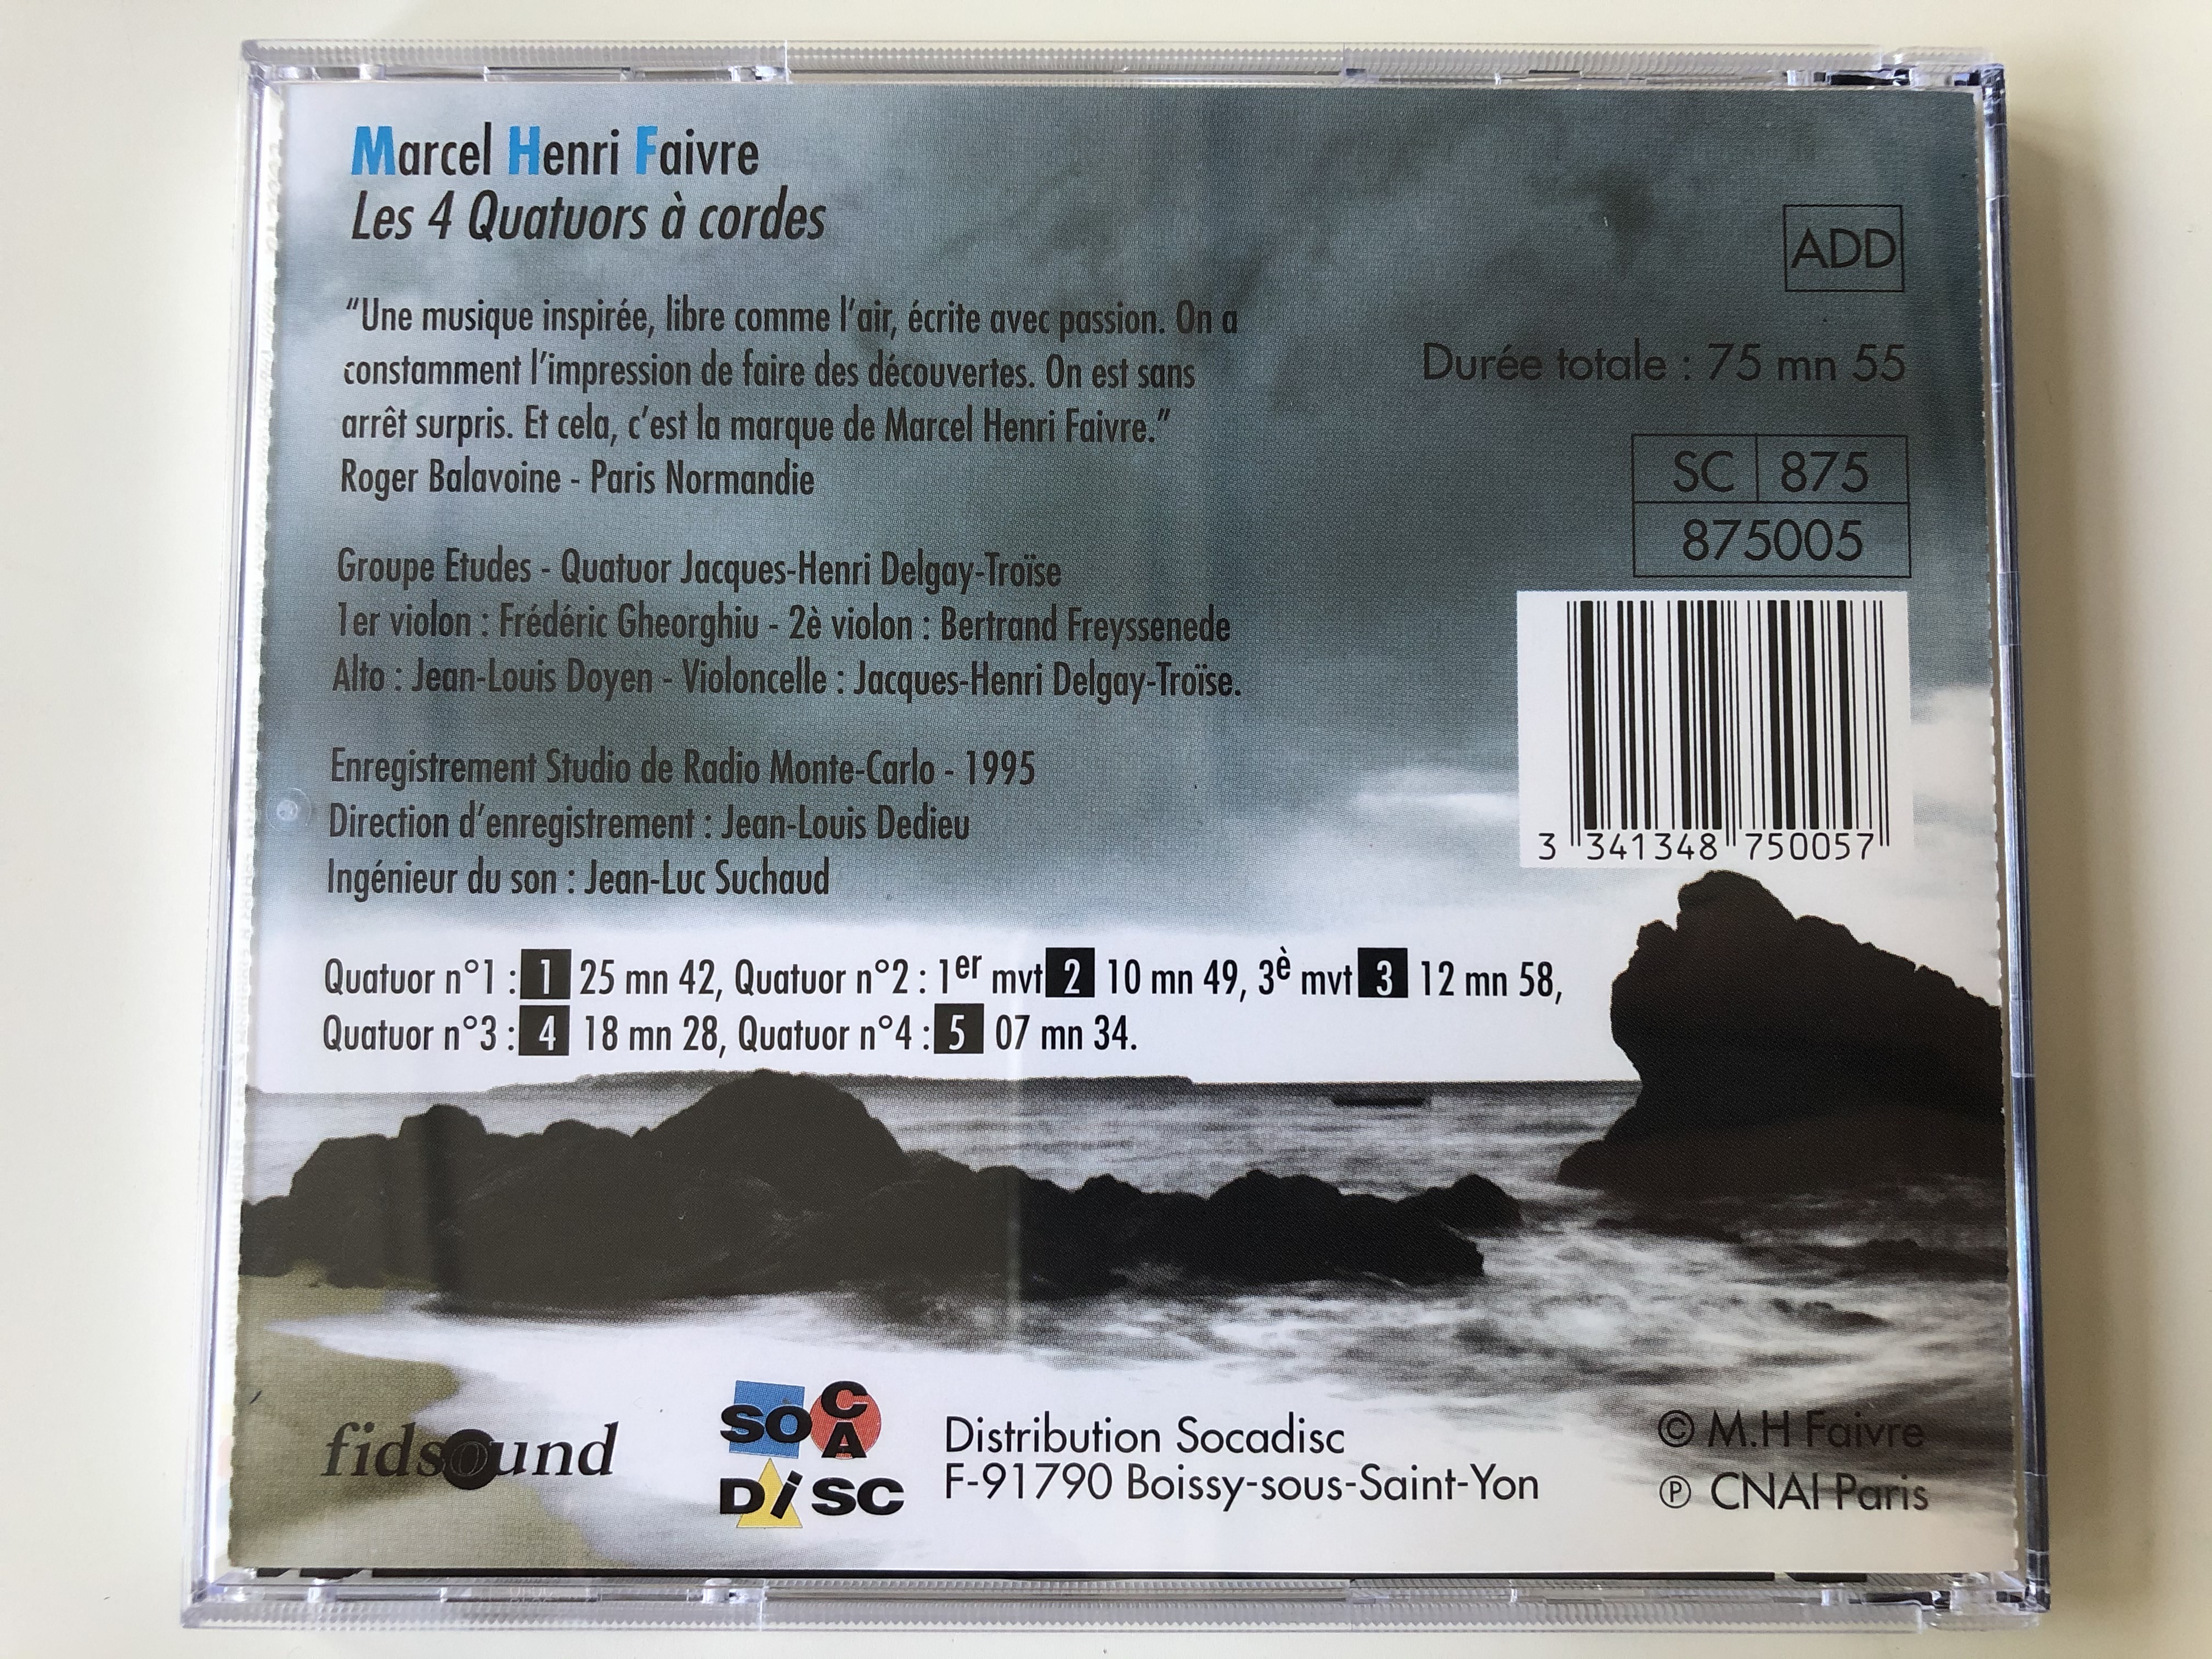 marcel-henri-faivre-les-4-quatuors-cordes-groupe-etudes-quatuor-jacques-henri-delgay-tro-se-fidsound-audio-cd-1995-875005-11-.jpg